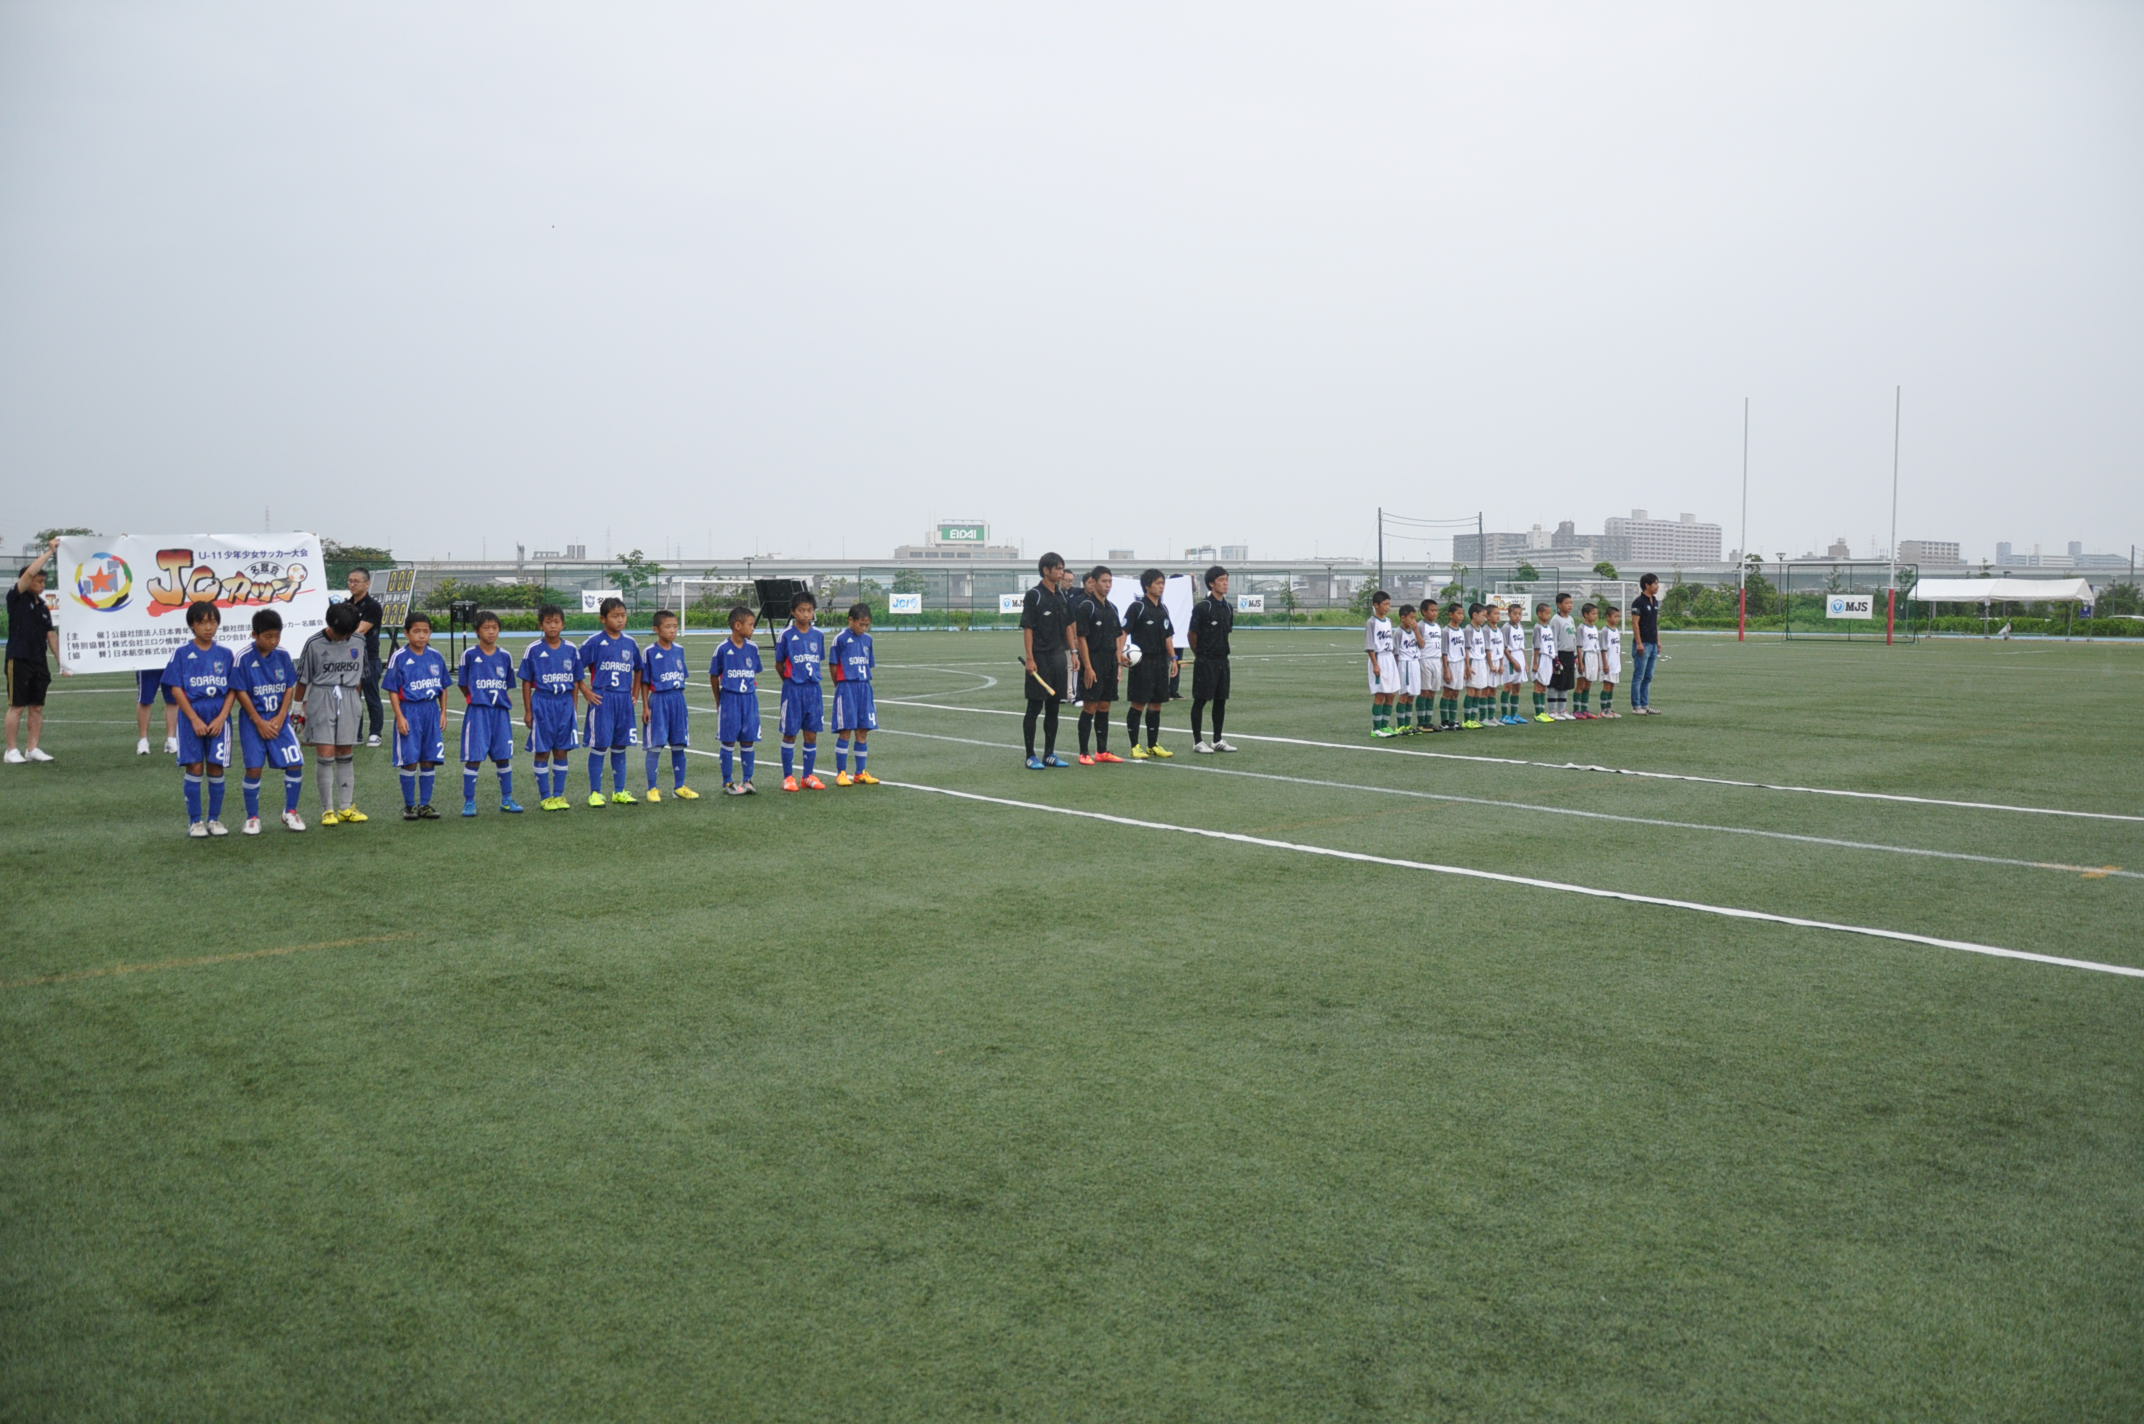 第1回jcカップu 11少年サッカー大会 優勝はソレッソ熊本 ジュニアサッカーnews